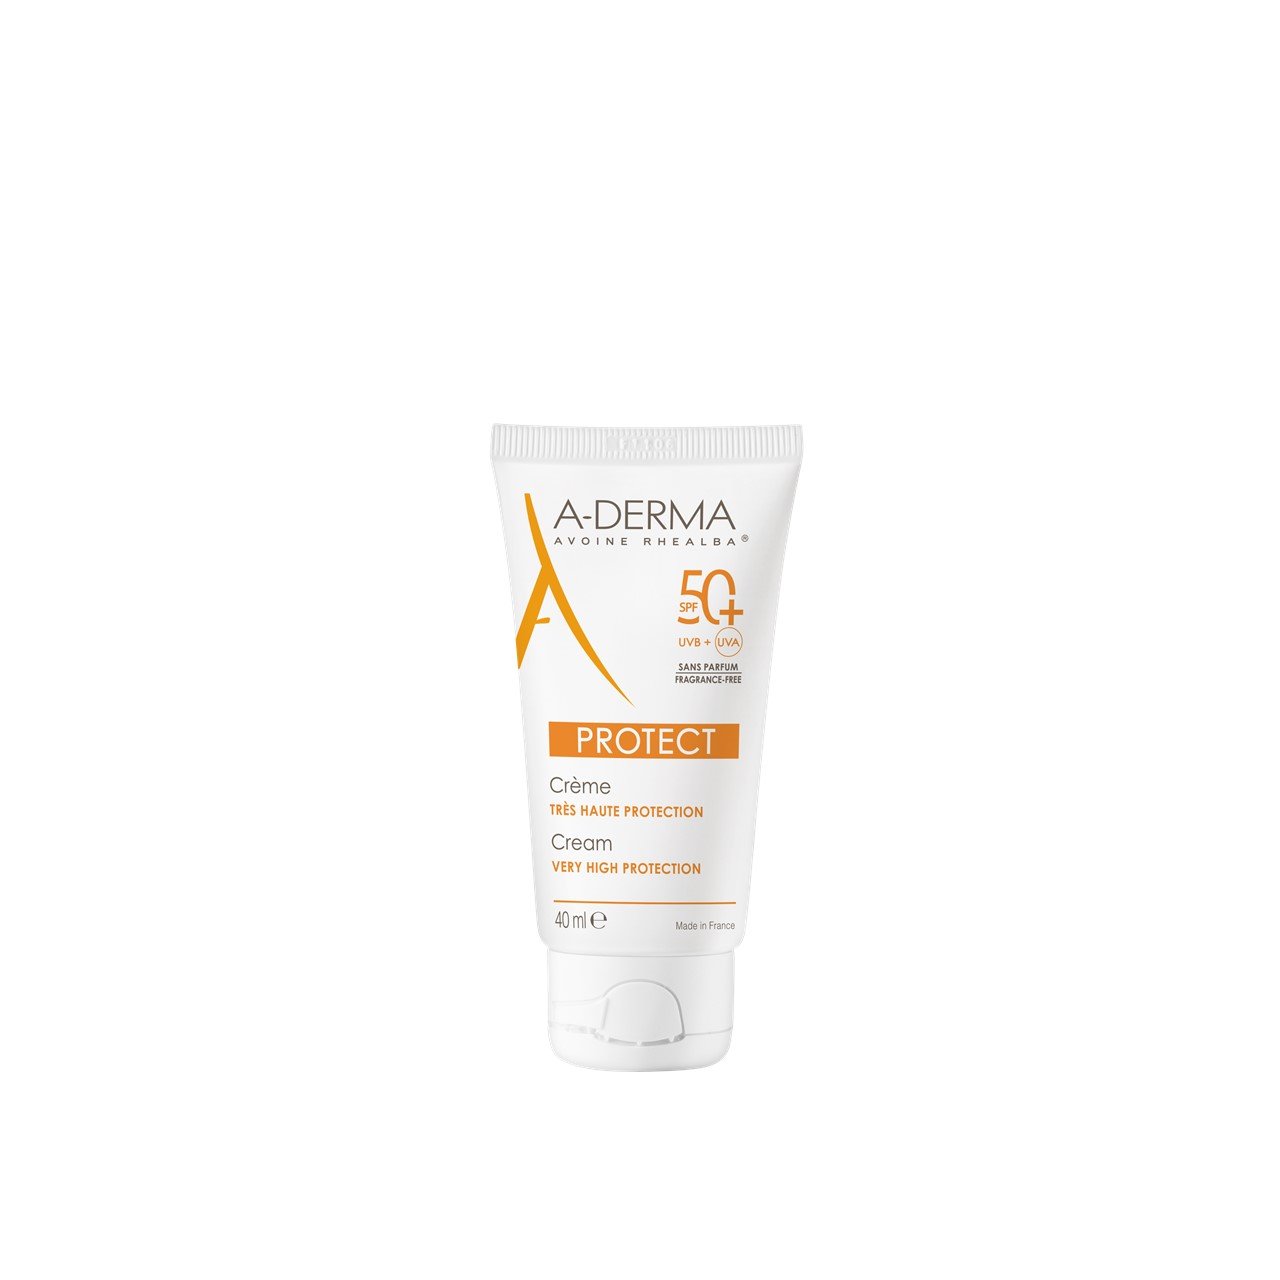 A-Derma Protect Cream Fragrance-free SPF50+ 40ml (1.35fl oz)